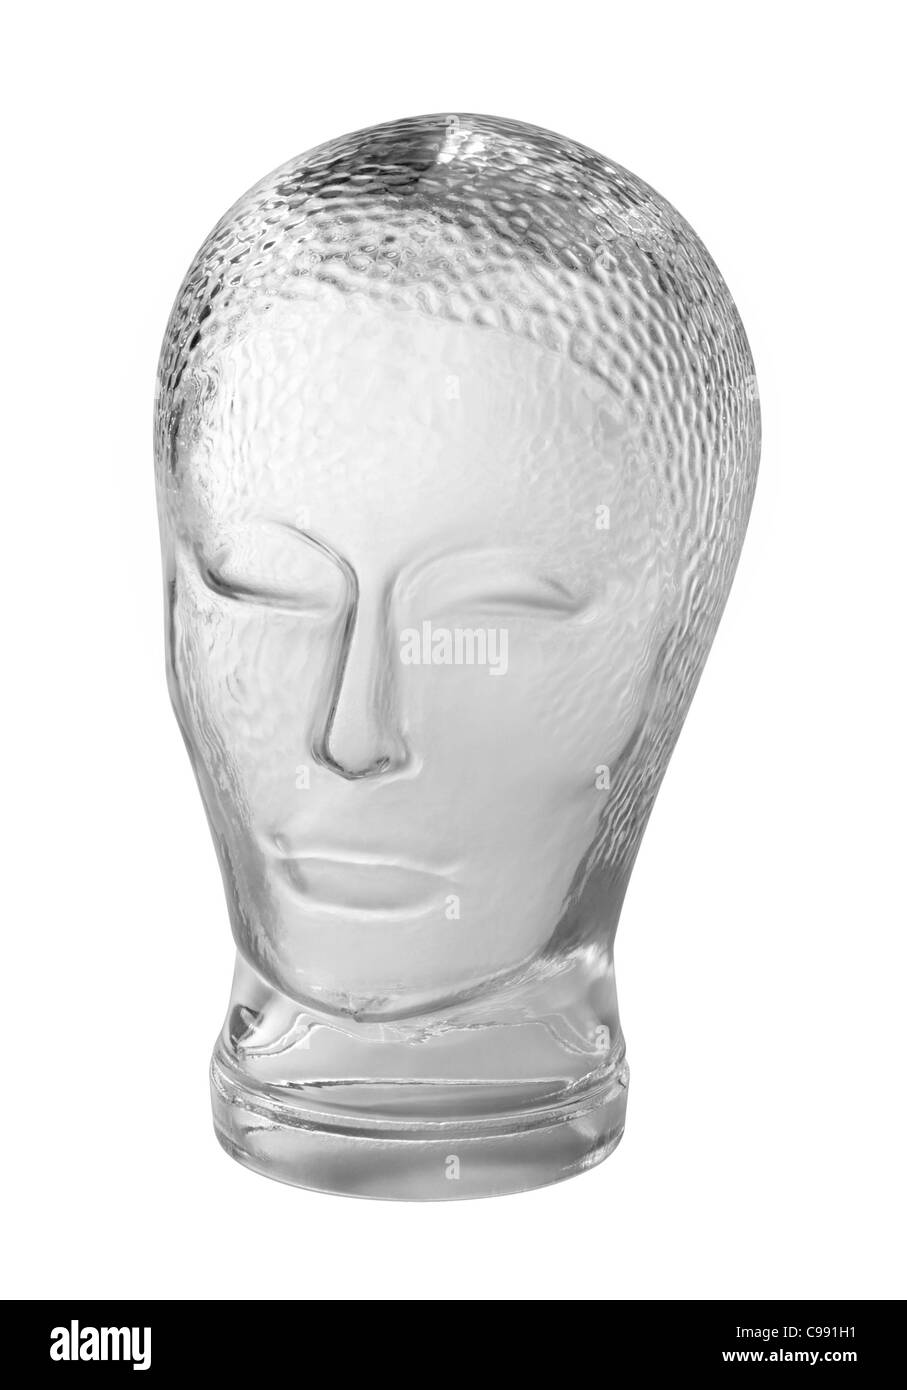 Profil von einem generischen menschlichen "dummy" Kopf aus Glas Farbverlauf grau zurück, mit Beschneidungspfad erschossen Stockfoto